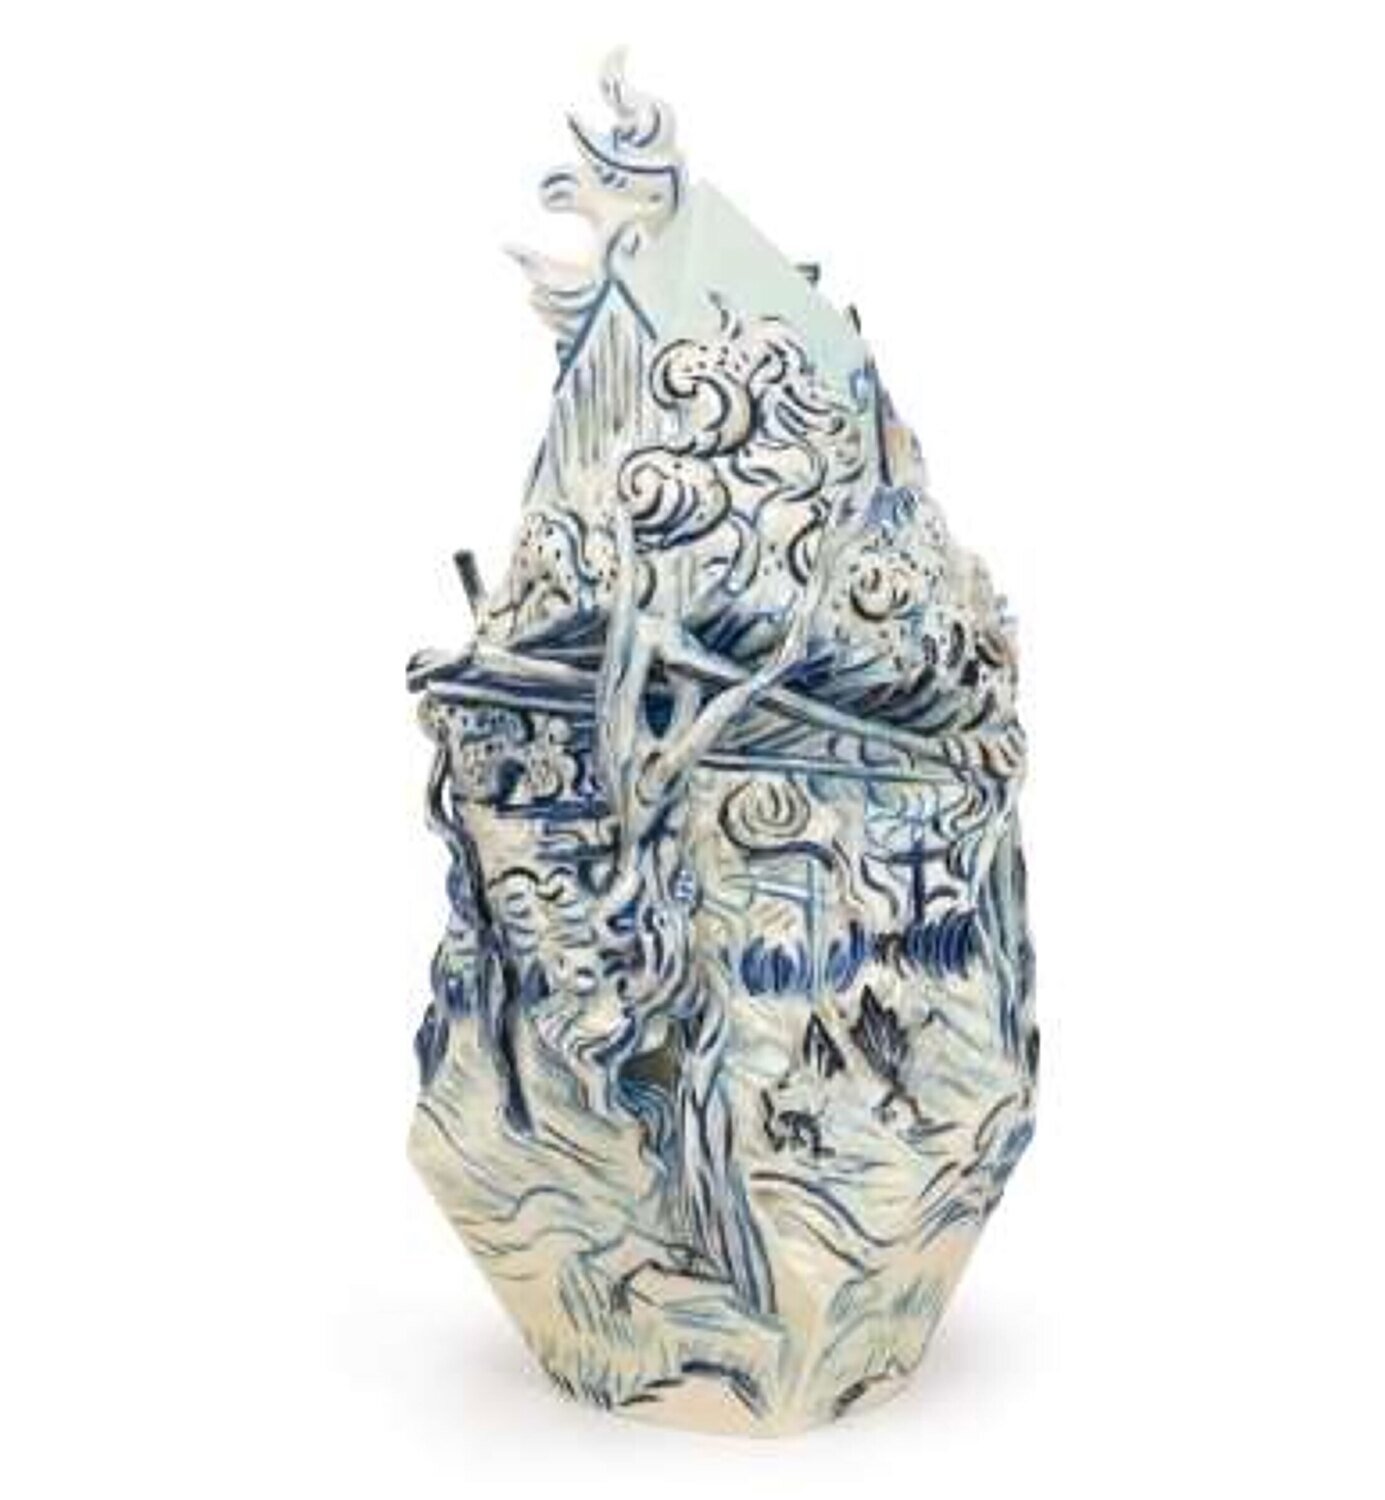 Franz Porcelain Van Gogh Wine For Life-Vineyard Design Sculptured Porcelain Vase With Wooden Base FZ03941